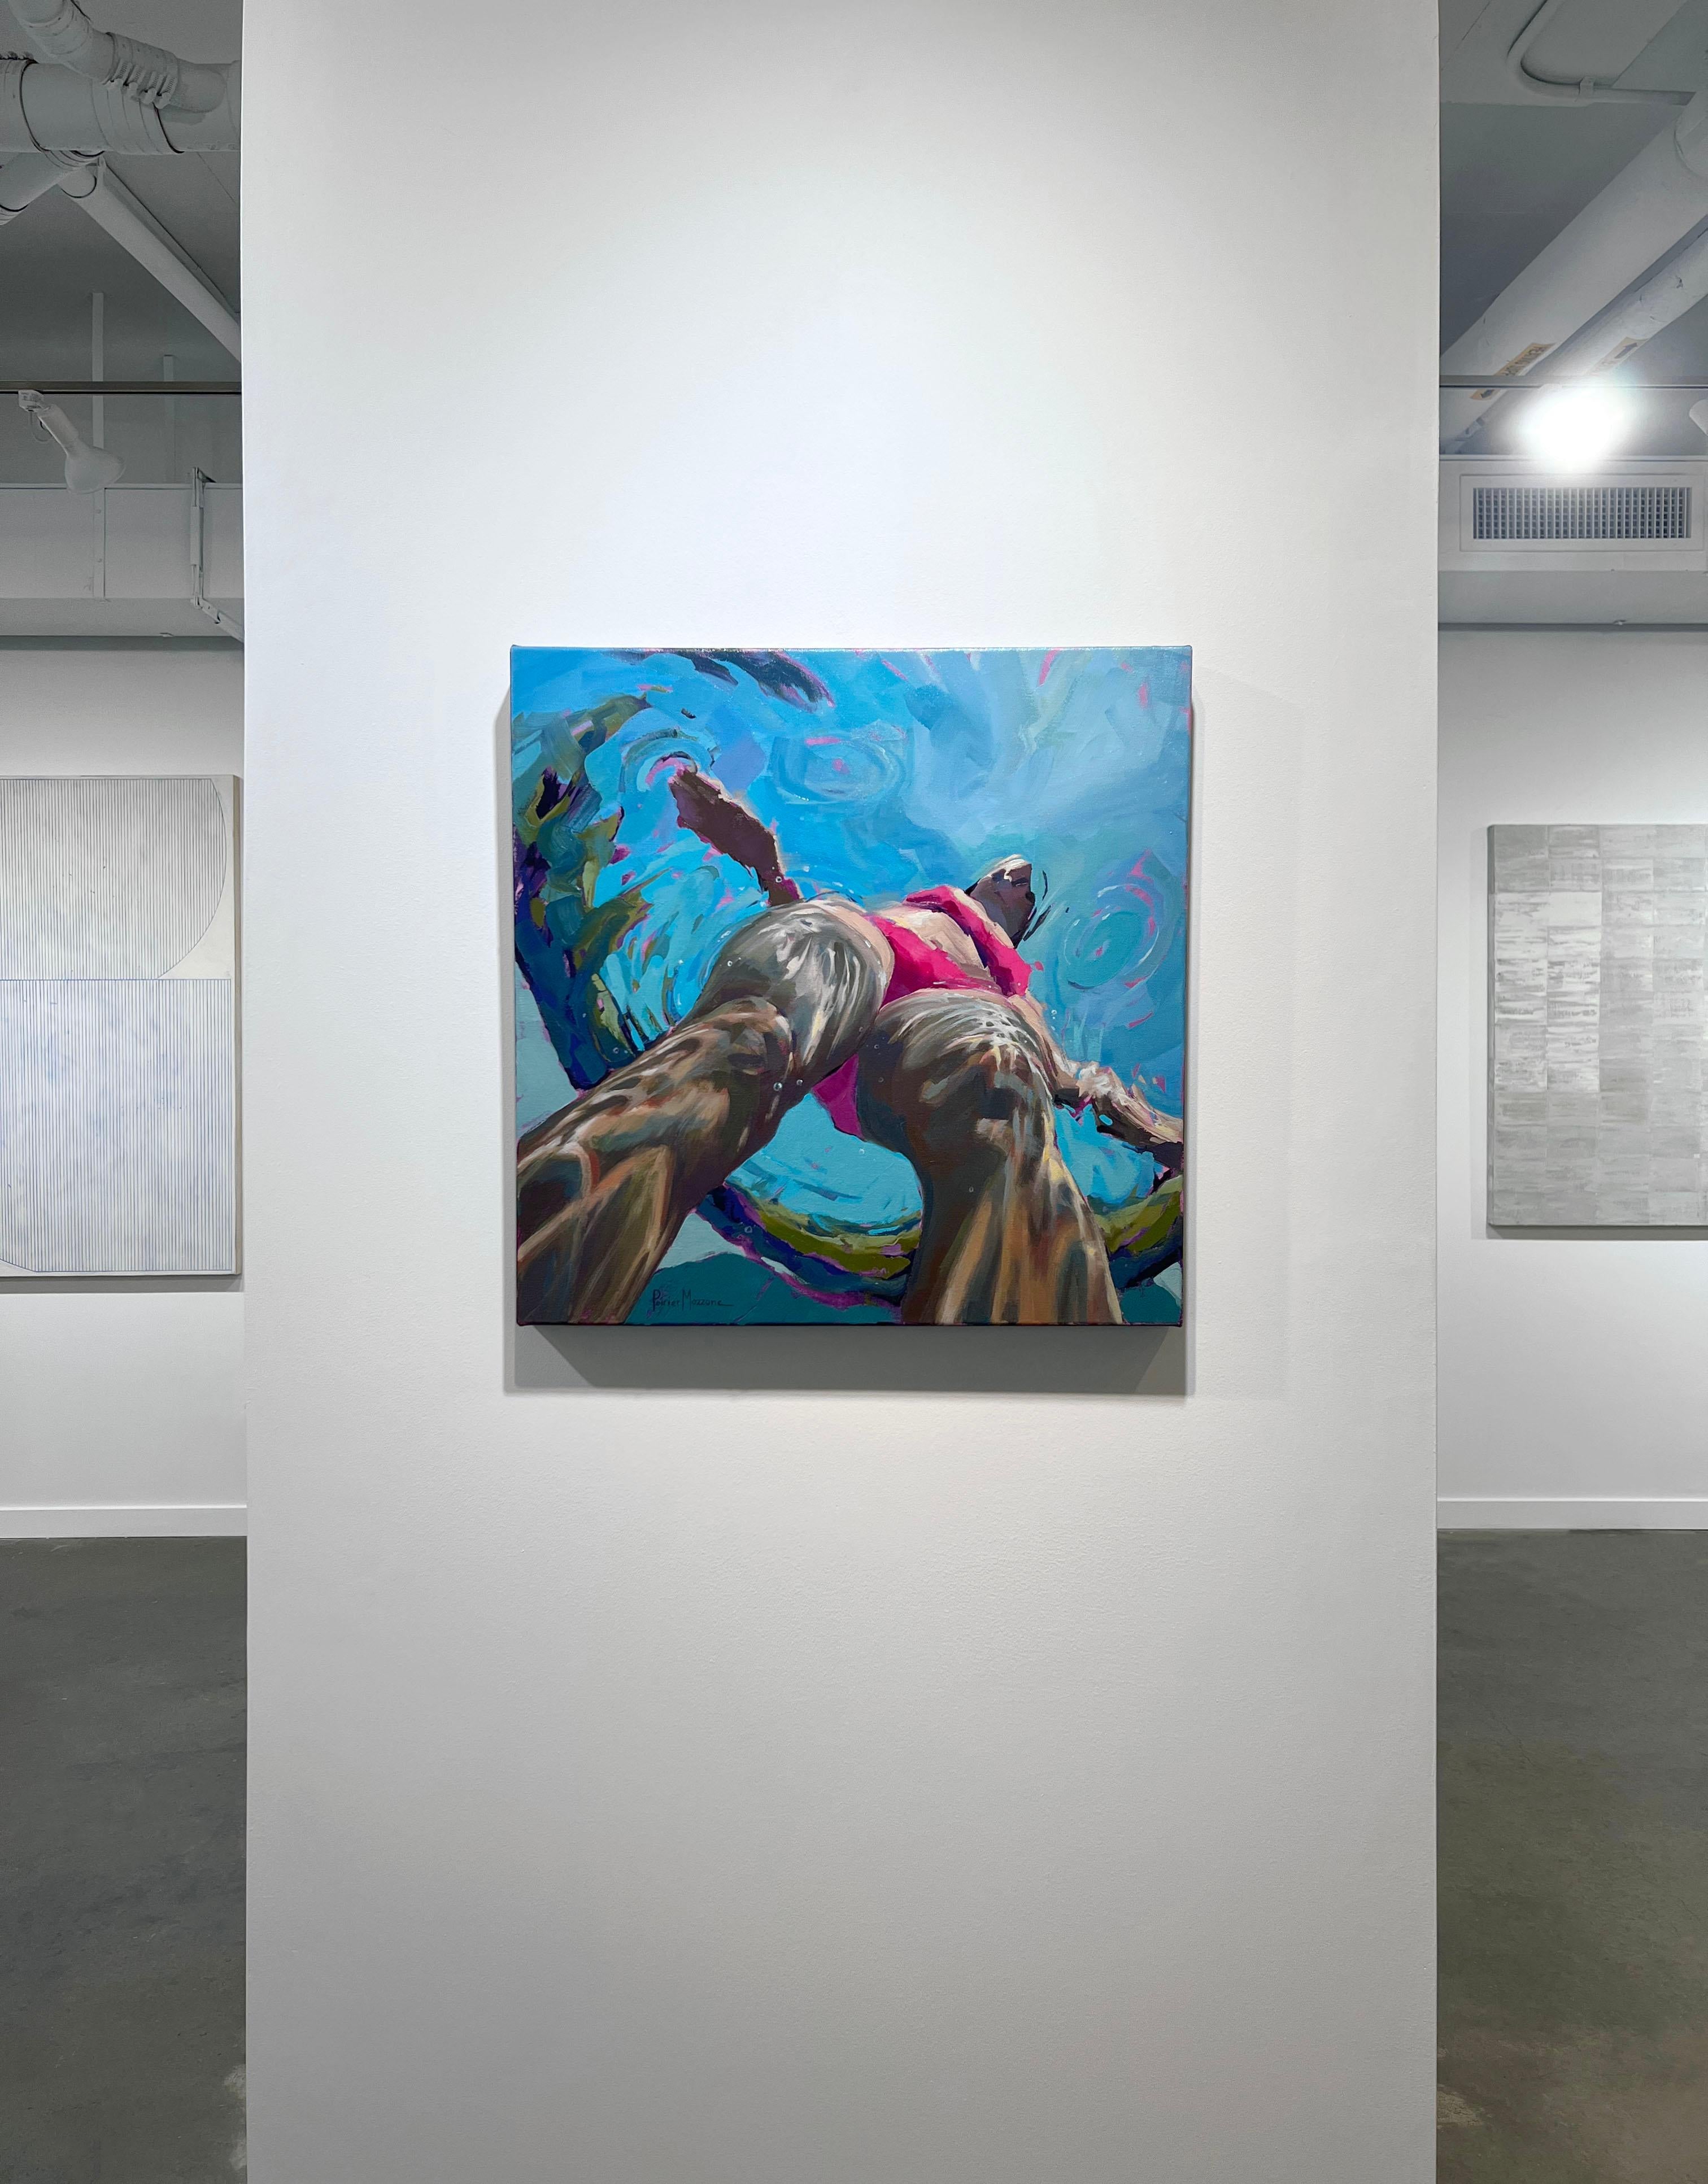 Cette peinture figurative abstraite de Michele Poirier-Mozzone présente une palette de bleu vif avec un accent rose contrastant. L'artiste capture la vue d'une fille en maillot de bain rose depuis un point de vue situé sous l'eau dans laquelle elle